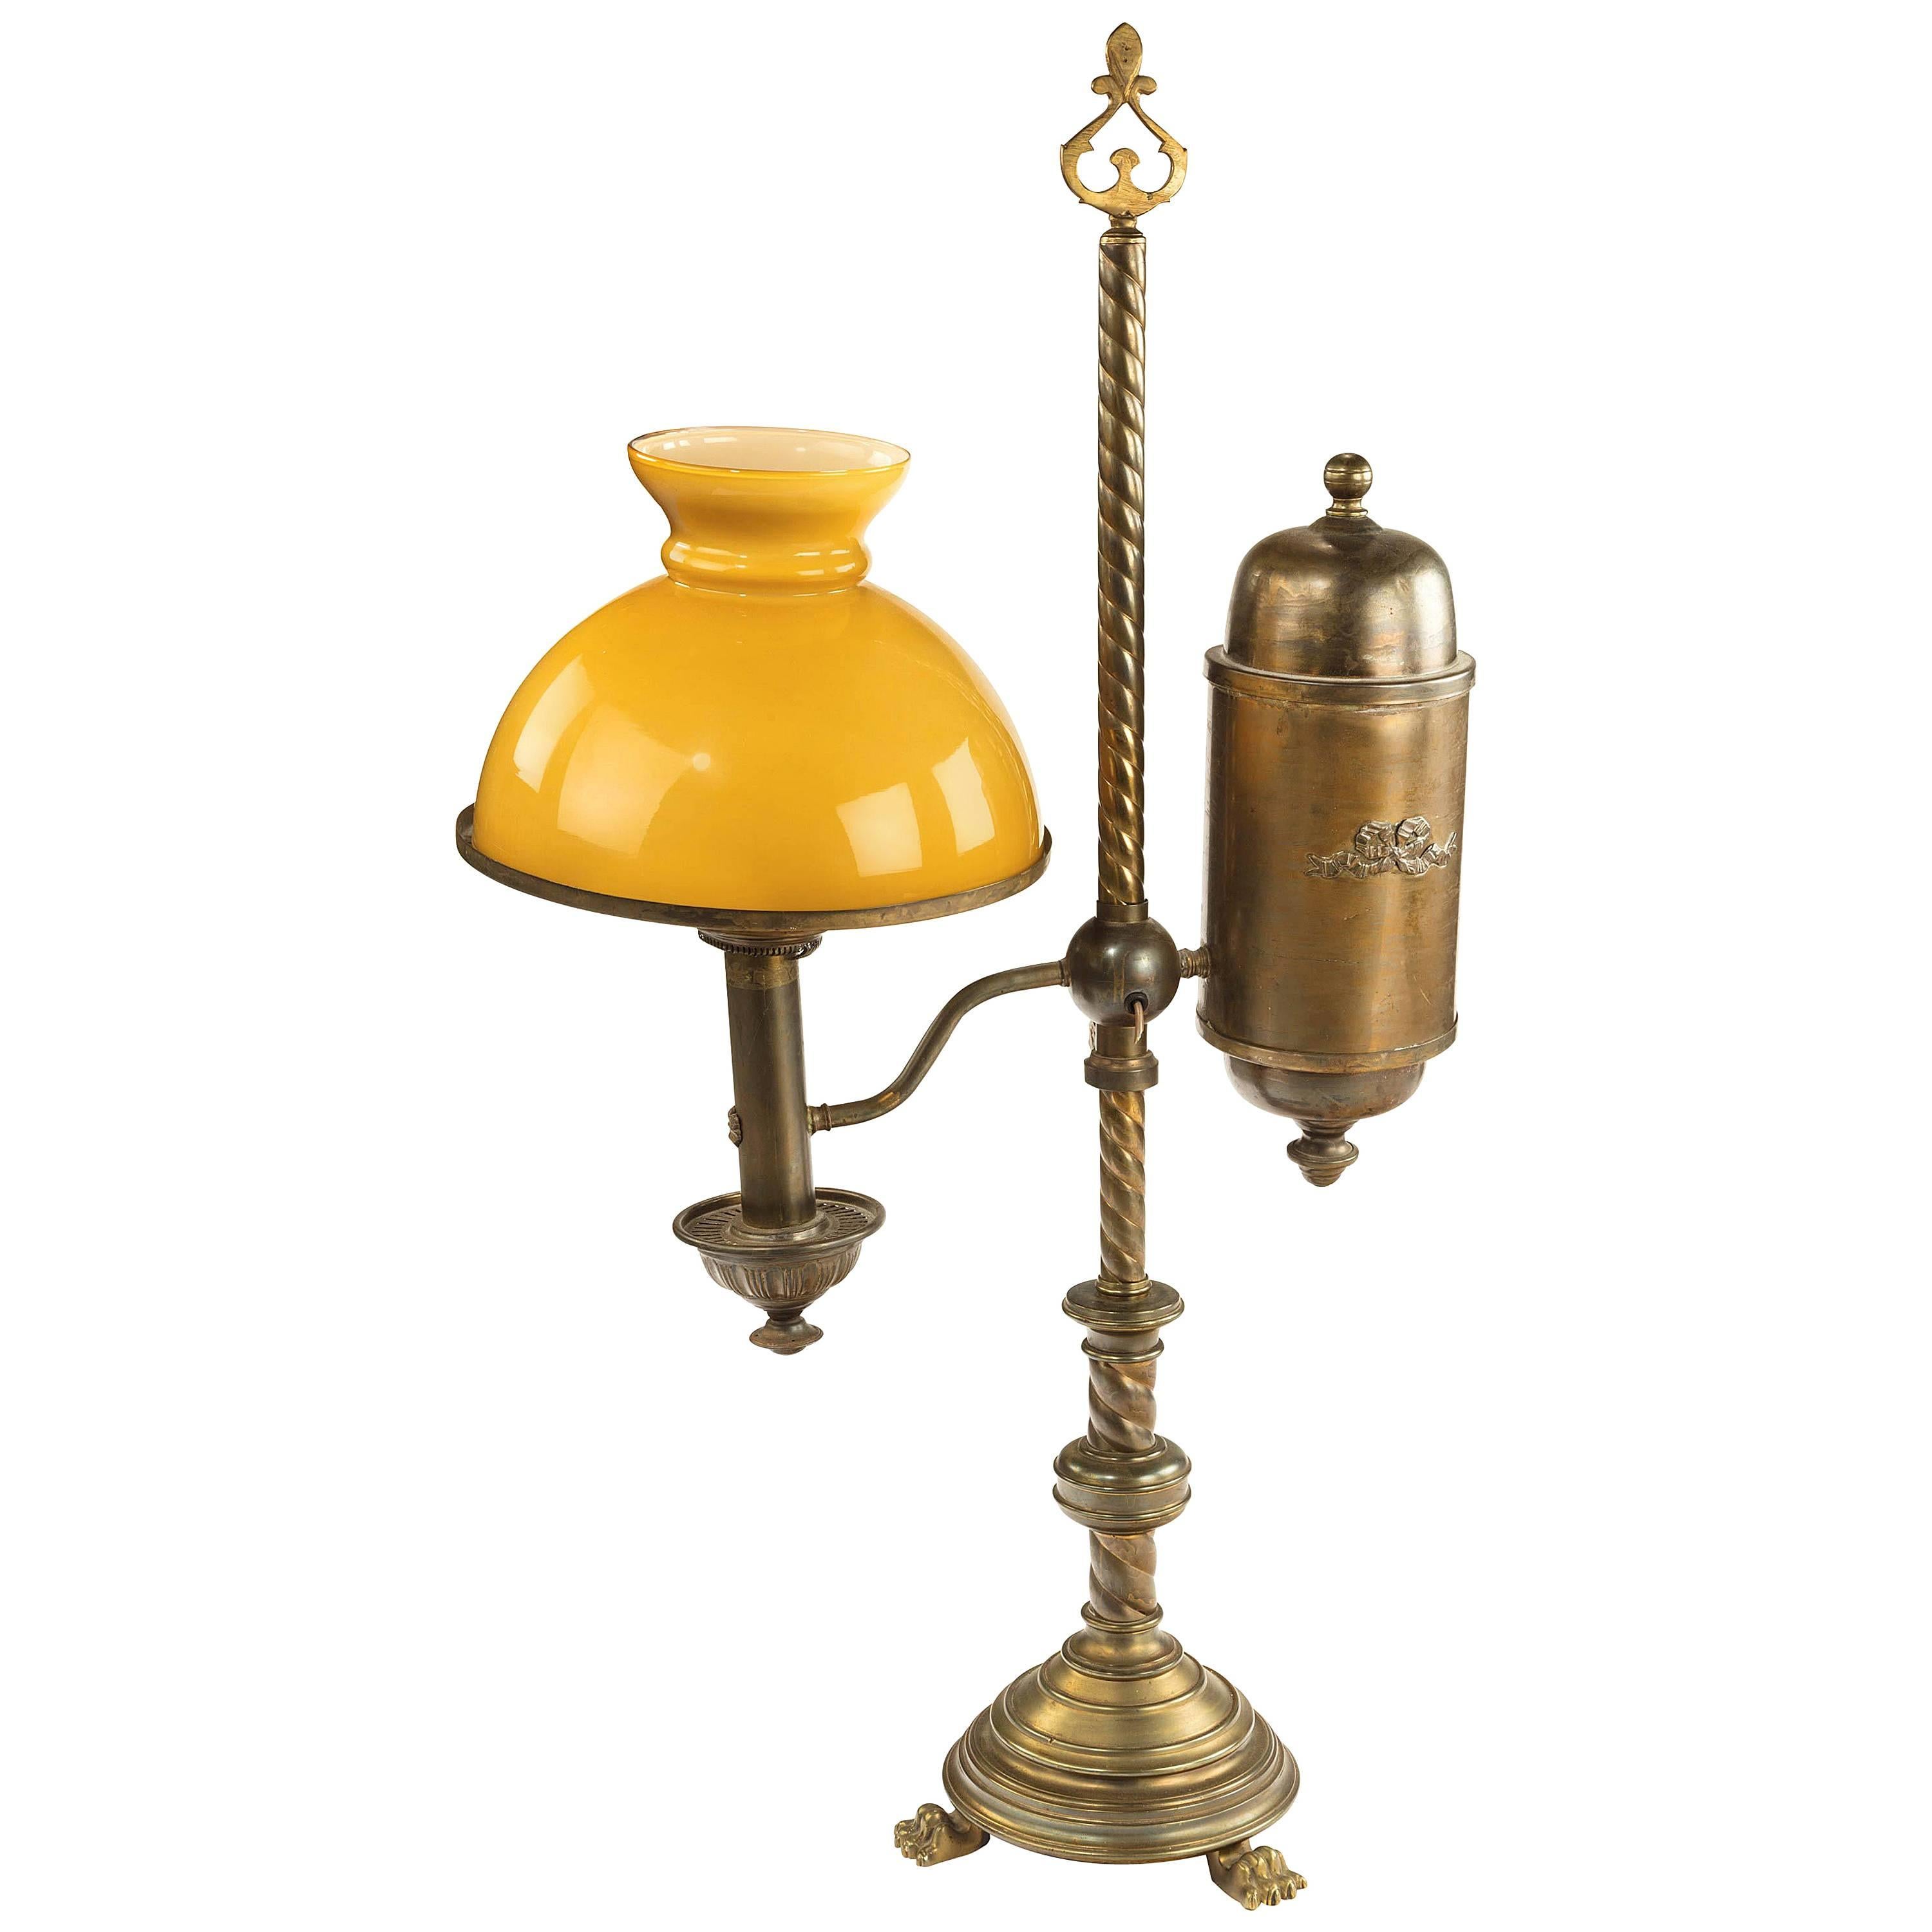 Alabaster-Tisch-Öllampe aus dem späten 19. Jahrhundert